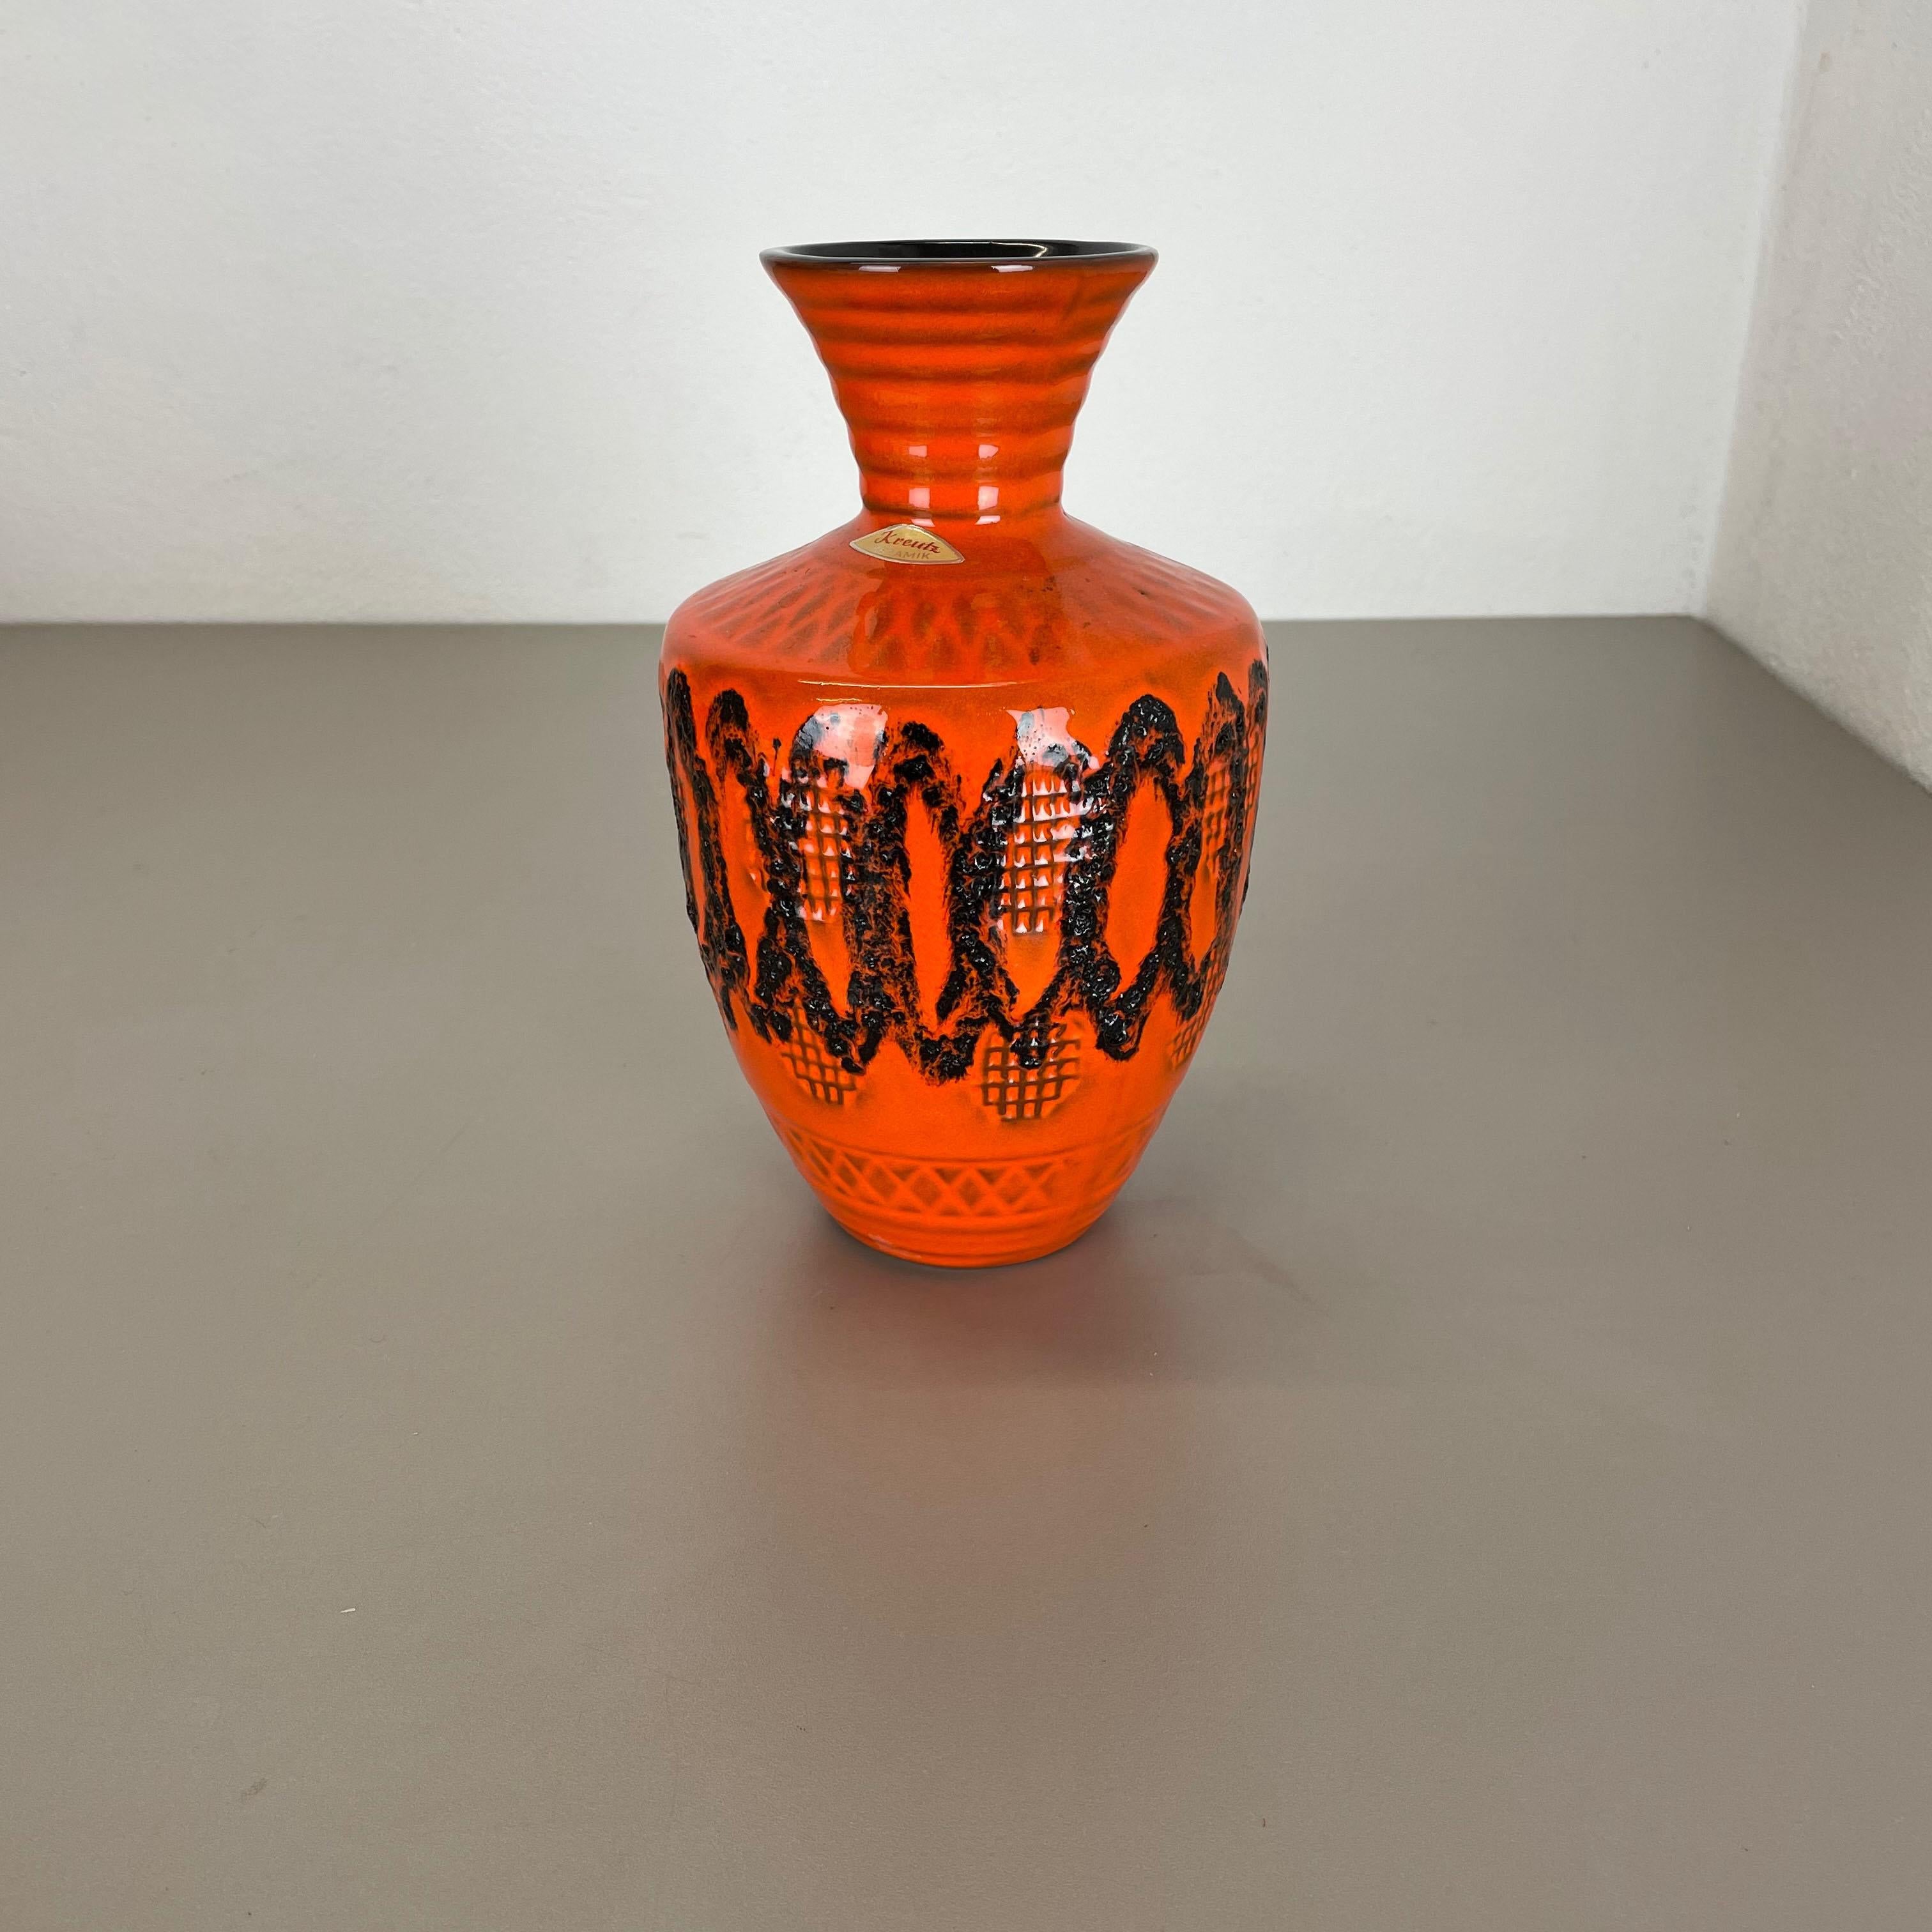 Article :

Vase en céramique


Producteur :

Kreutz Ceramic, Allemagne



Décennie :

1970s




Vase original en céramique des années 1970, fabriqué en Allemagne. Production allemande de haute qualité avec une belle structure